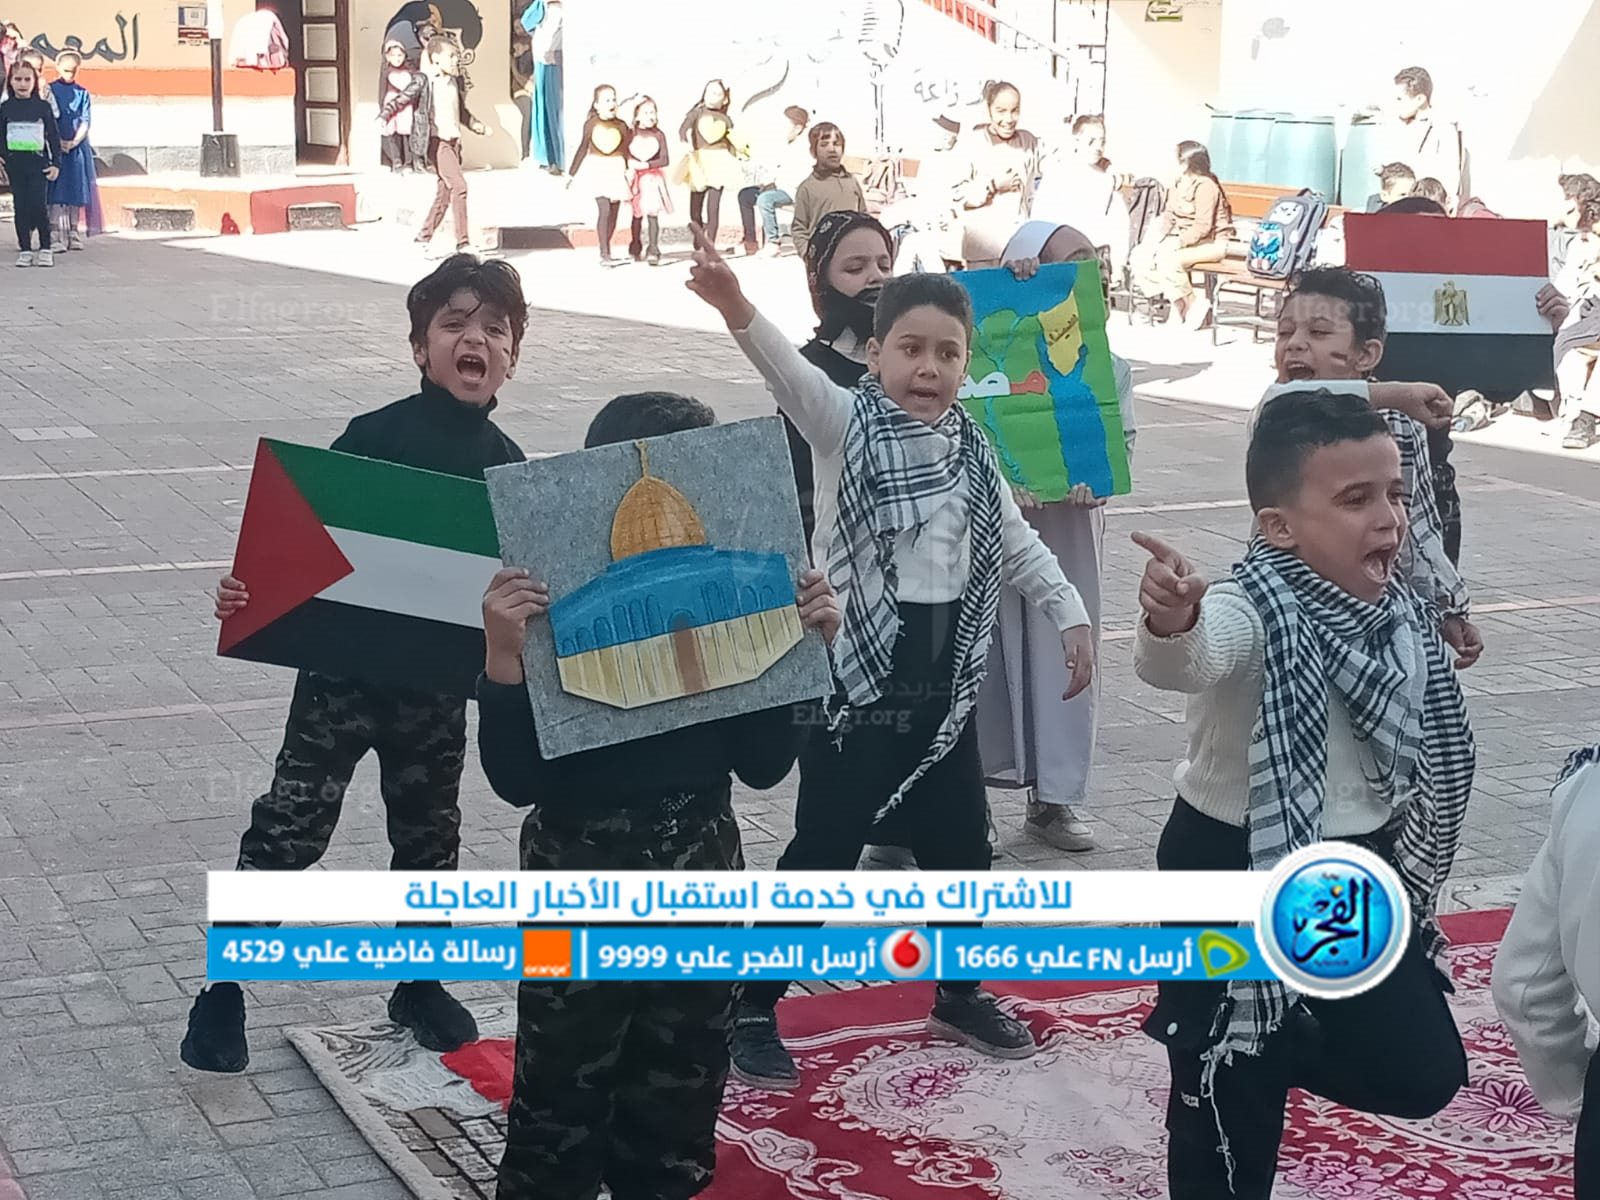 القضية الفلسطينية تسيطر علي احتفالات عيد الطفولة بمدارس البحيرة (صور)
 منذ أقل من 5 دقائق